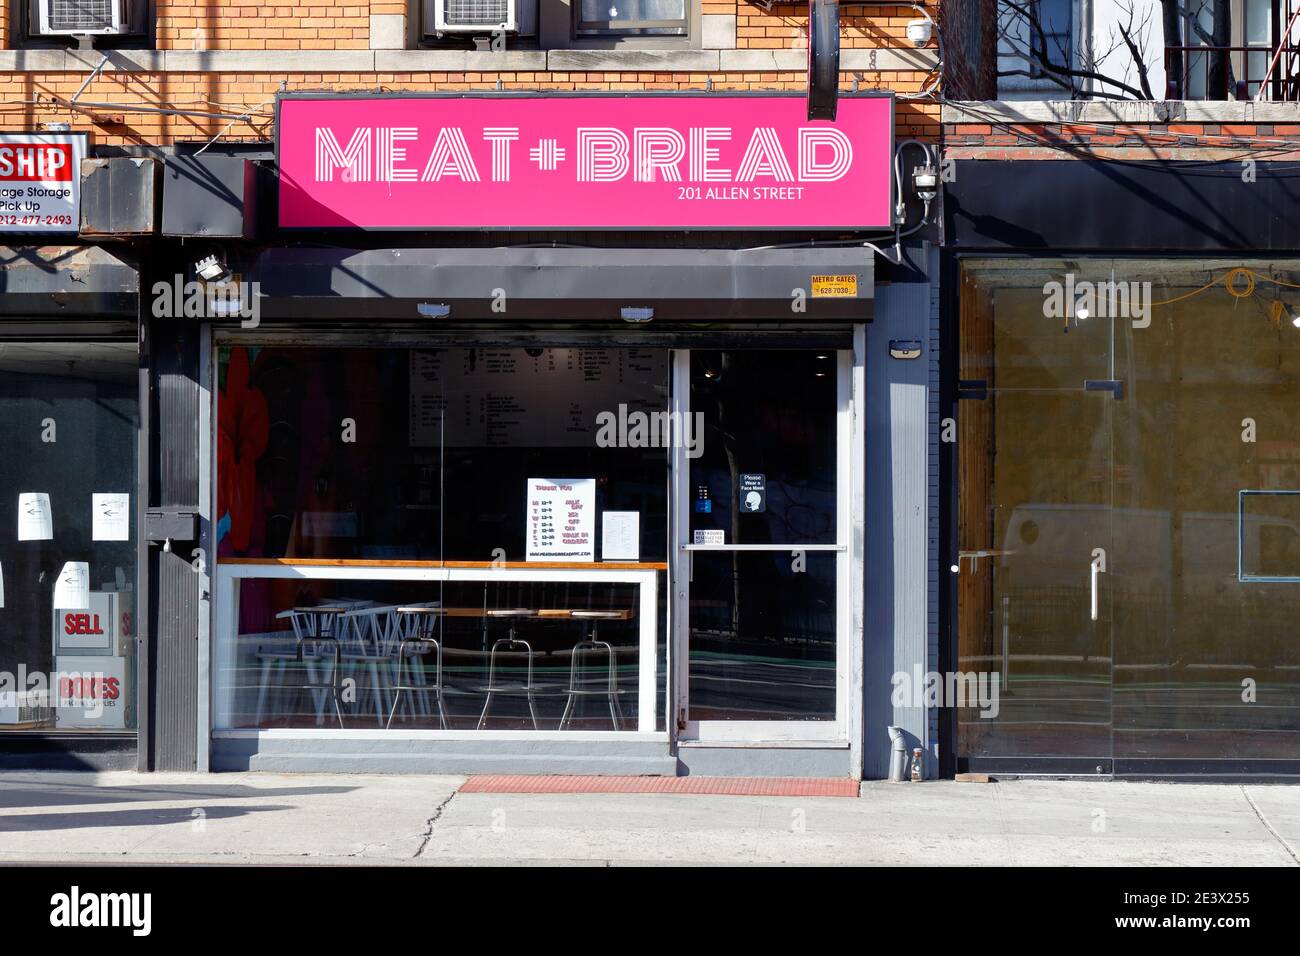 Meat + Bread, 201 Allen St, New York, NYC Foto von einem Restaurant in Manhattans Lower East Side. Stockfoto